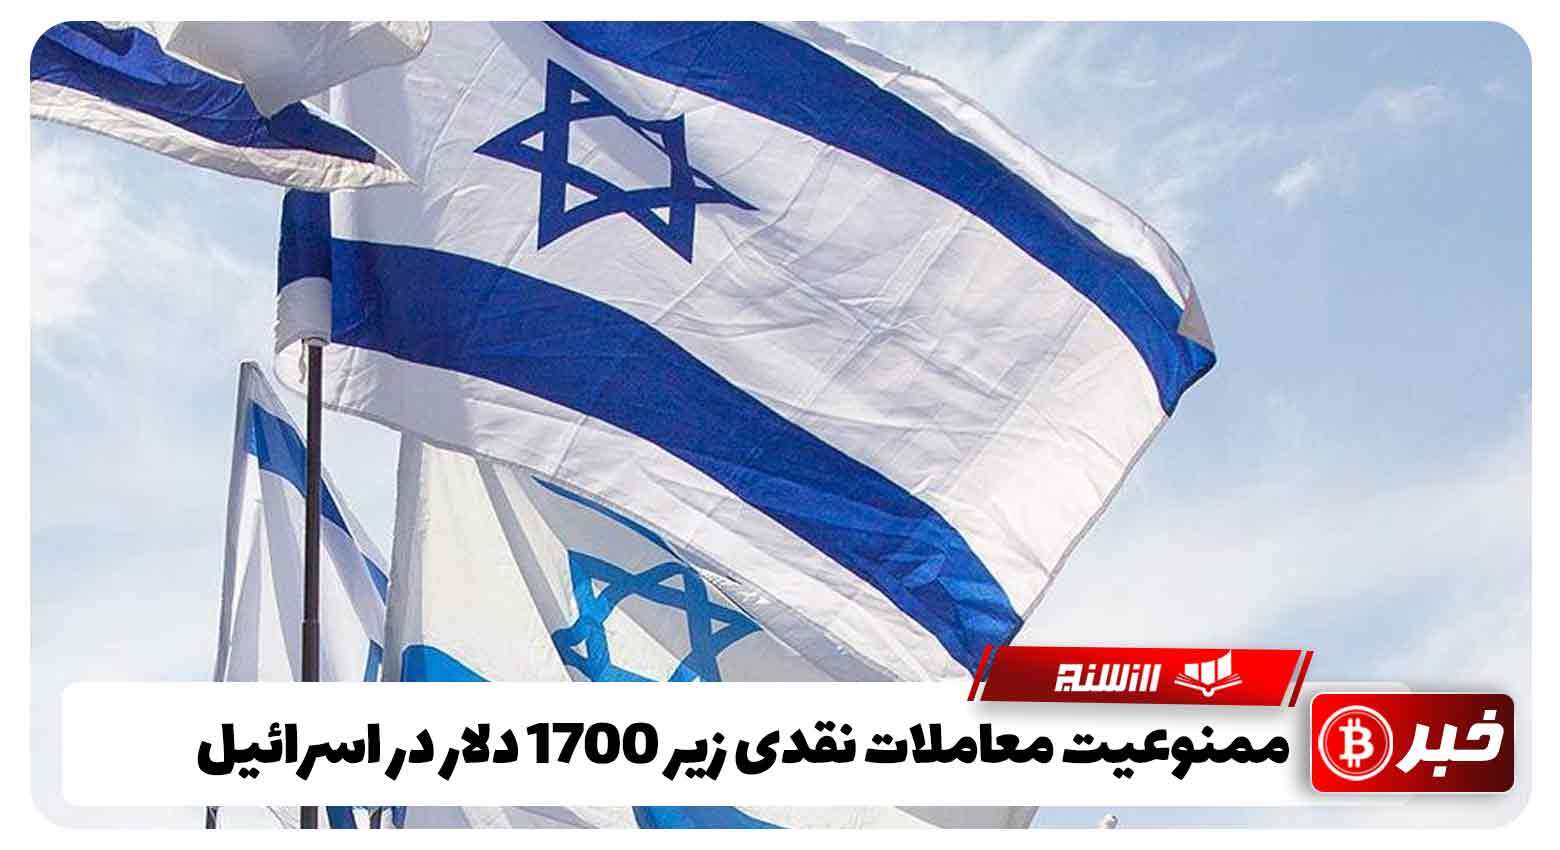 ممنوعیت معاملات نقدی زیر 1700 دلار در اسرائیل